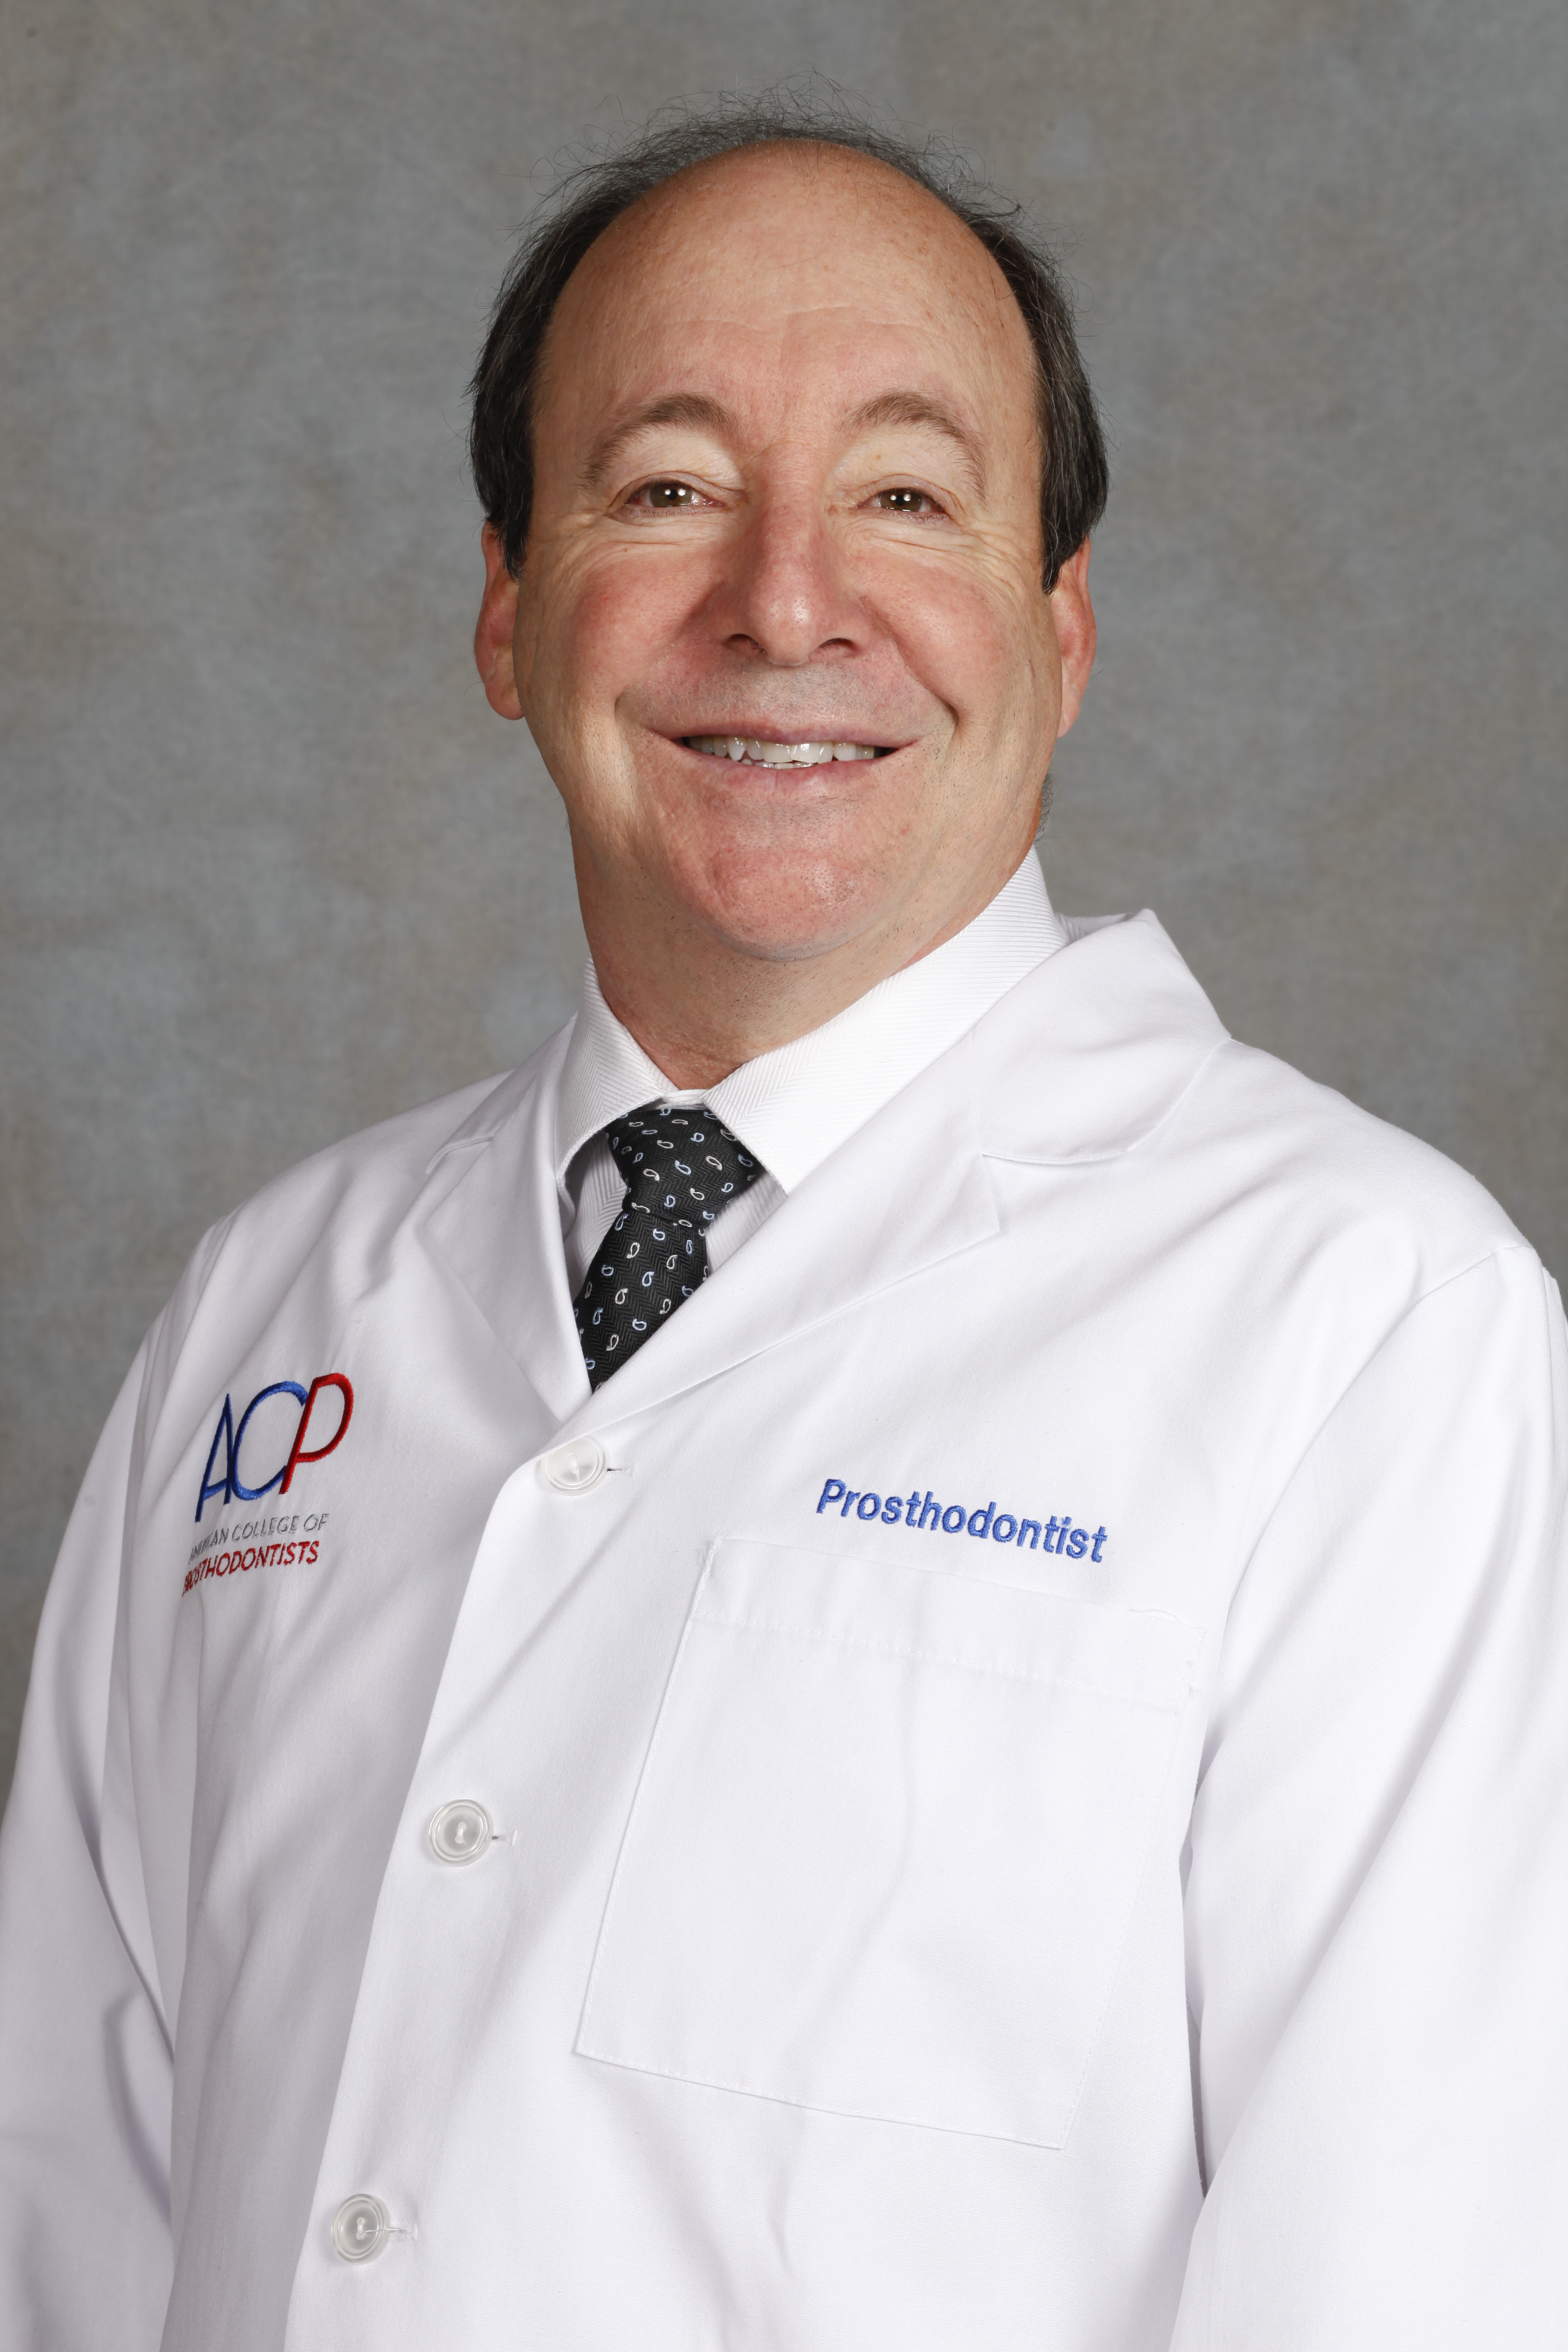 Dr. Steven Rothenberg